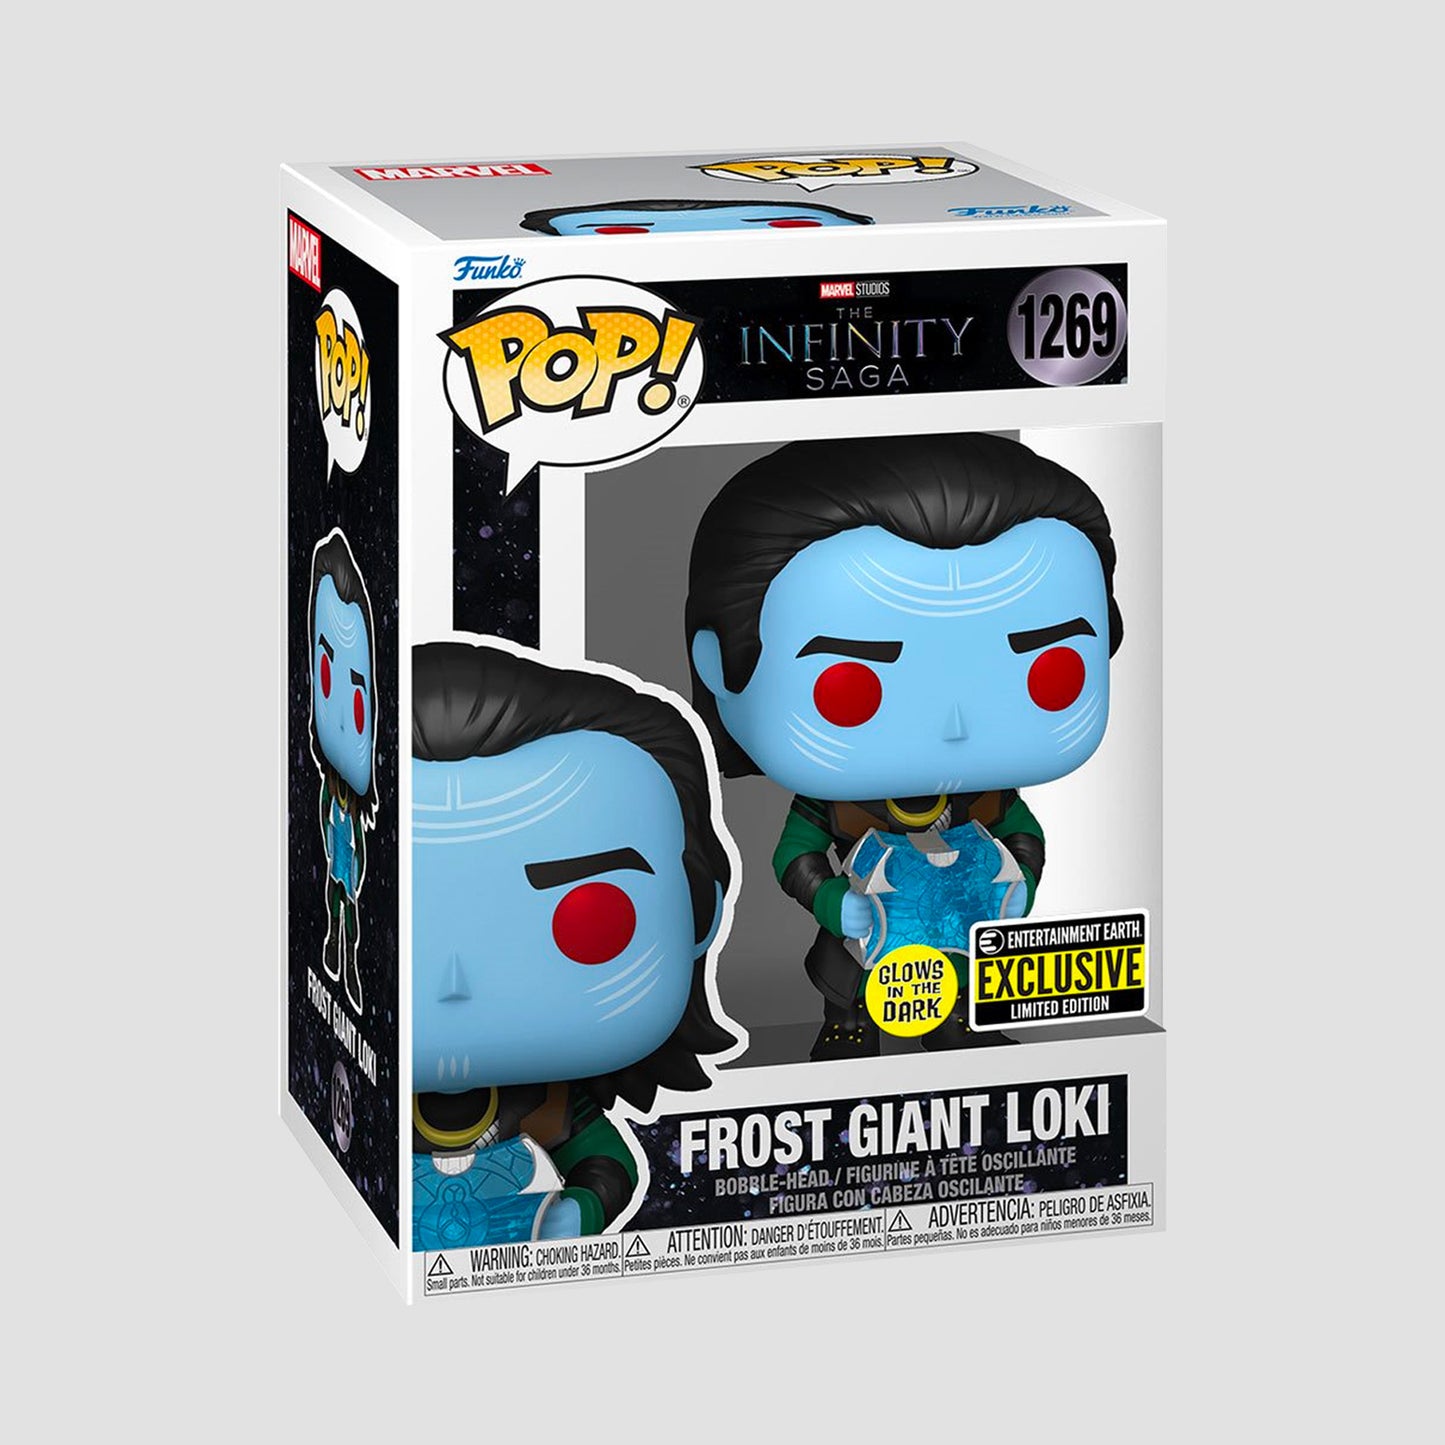 Buy Pop! Frost Giant Loki (Glow) at Funko.